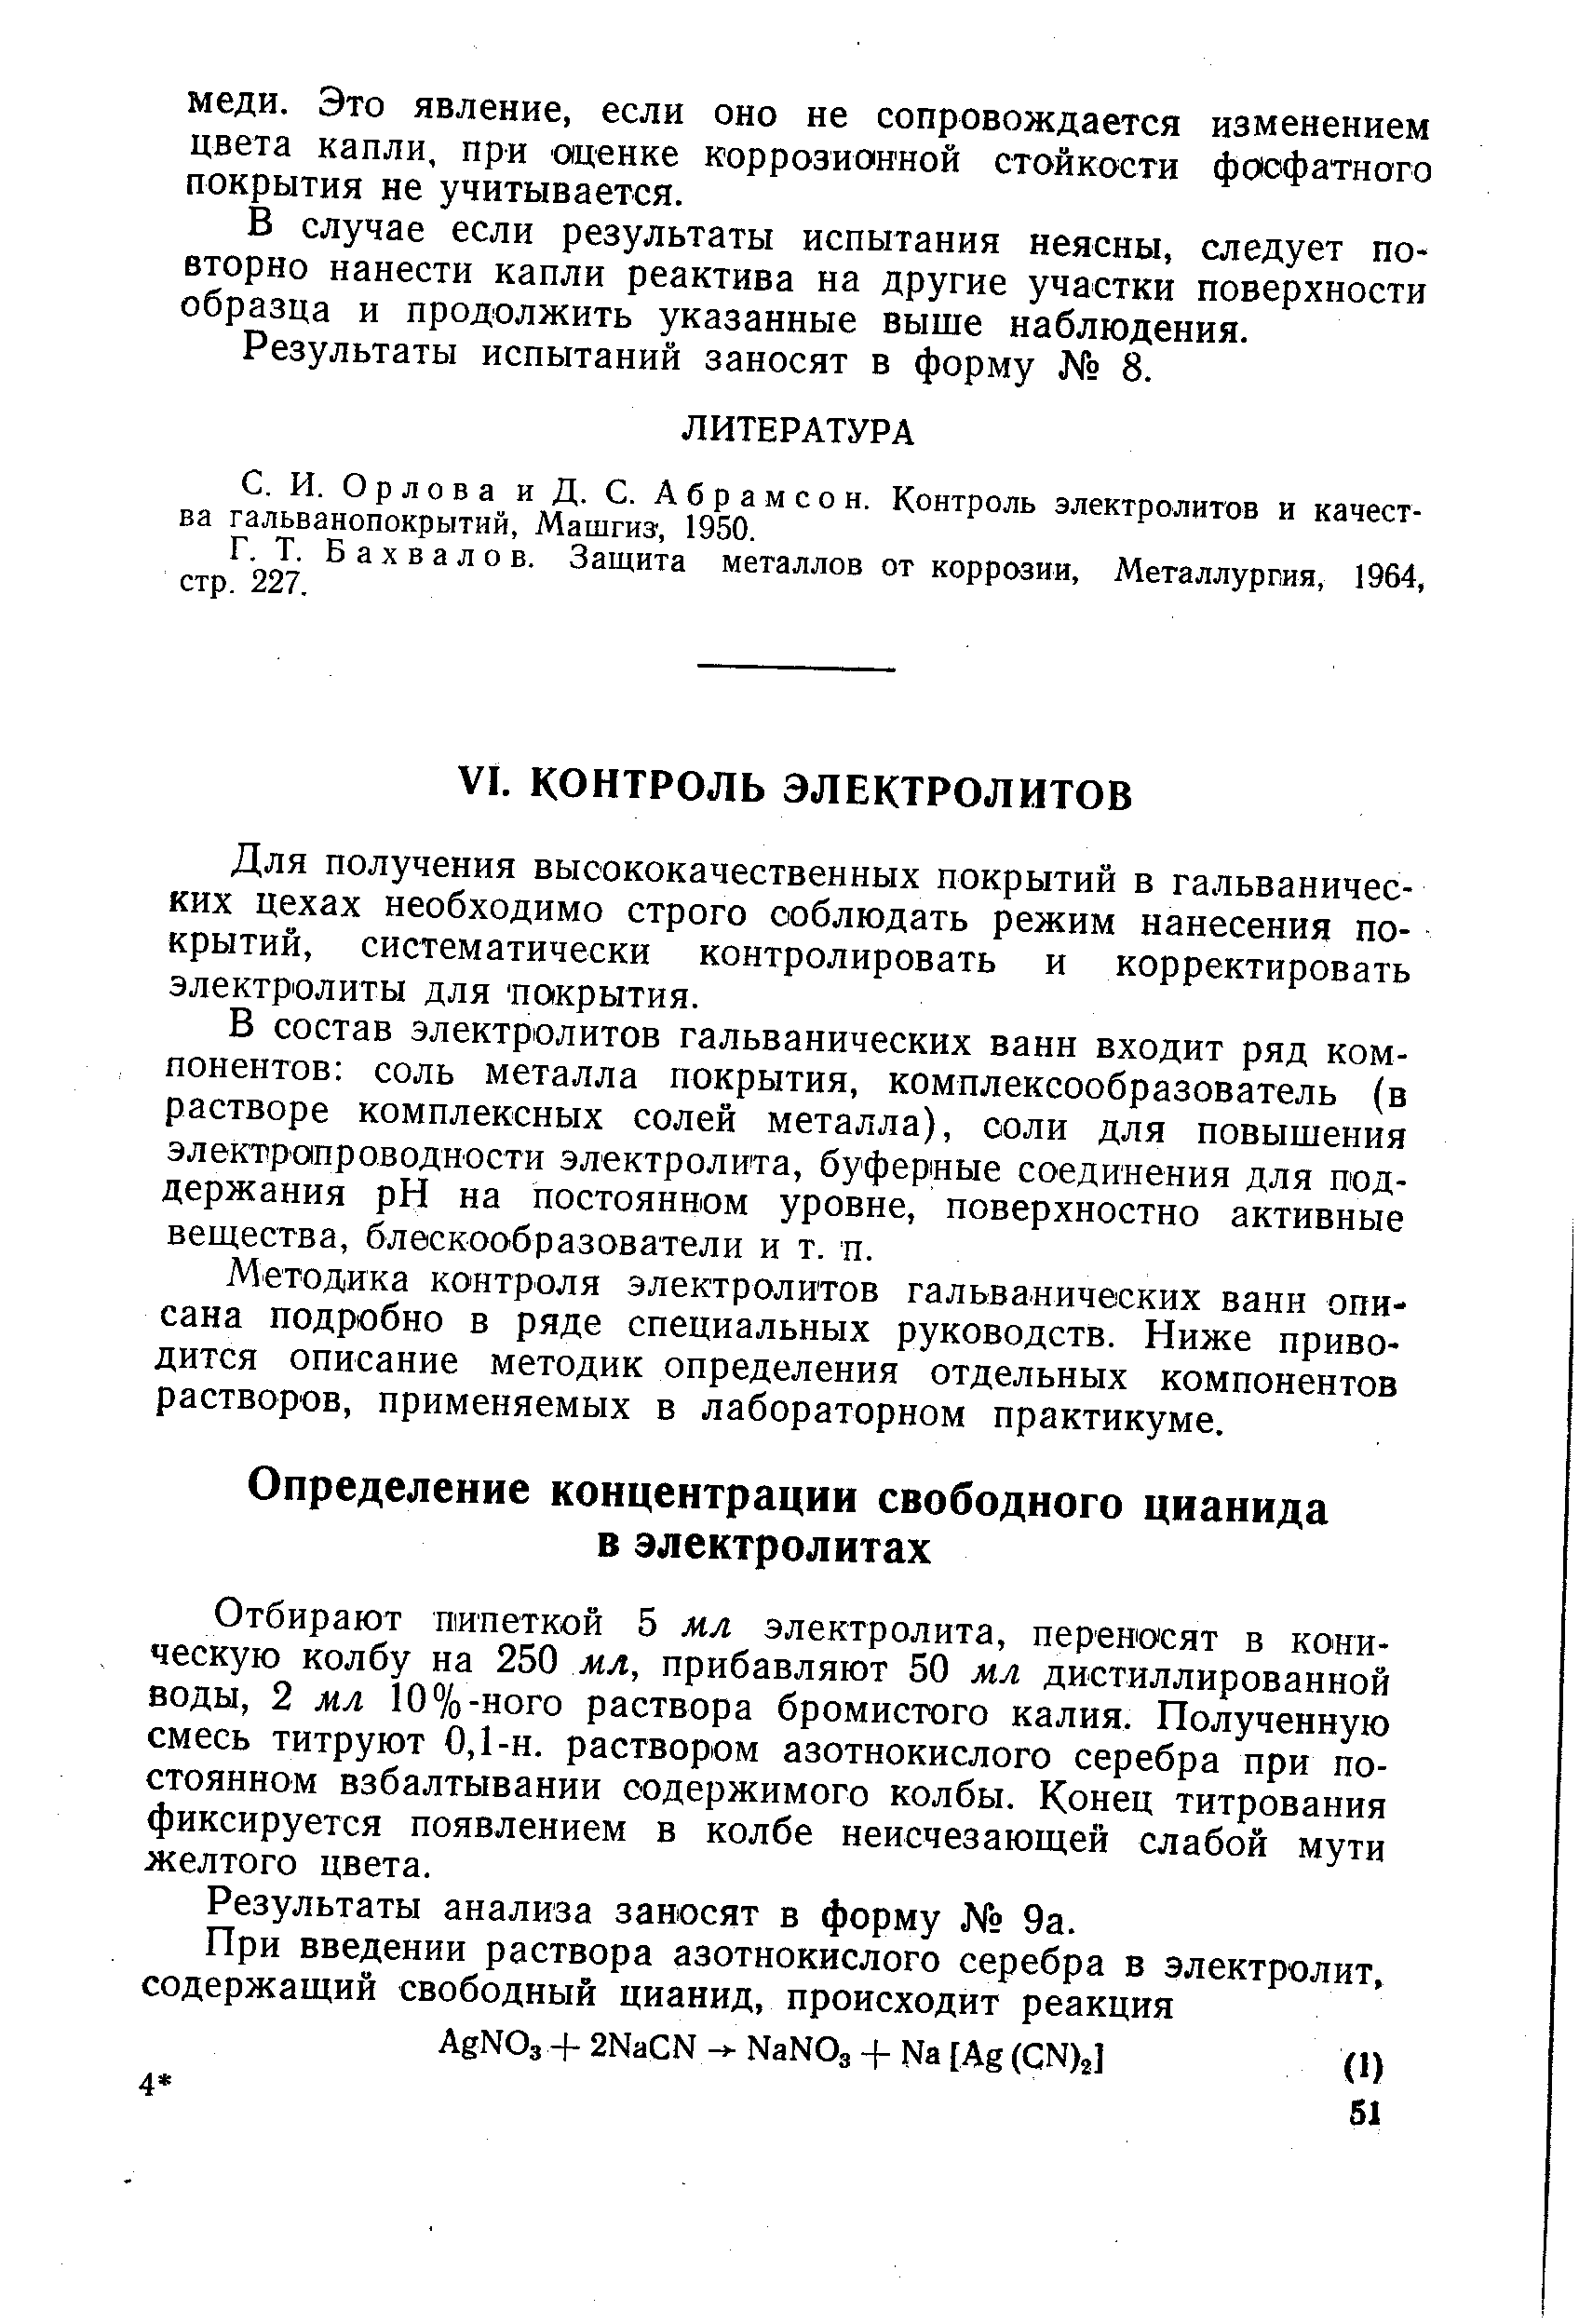 Бахвалов. Защита металлов от коррозии. Металлургия, 1964, стр. 227.